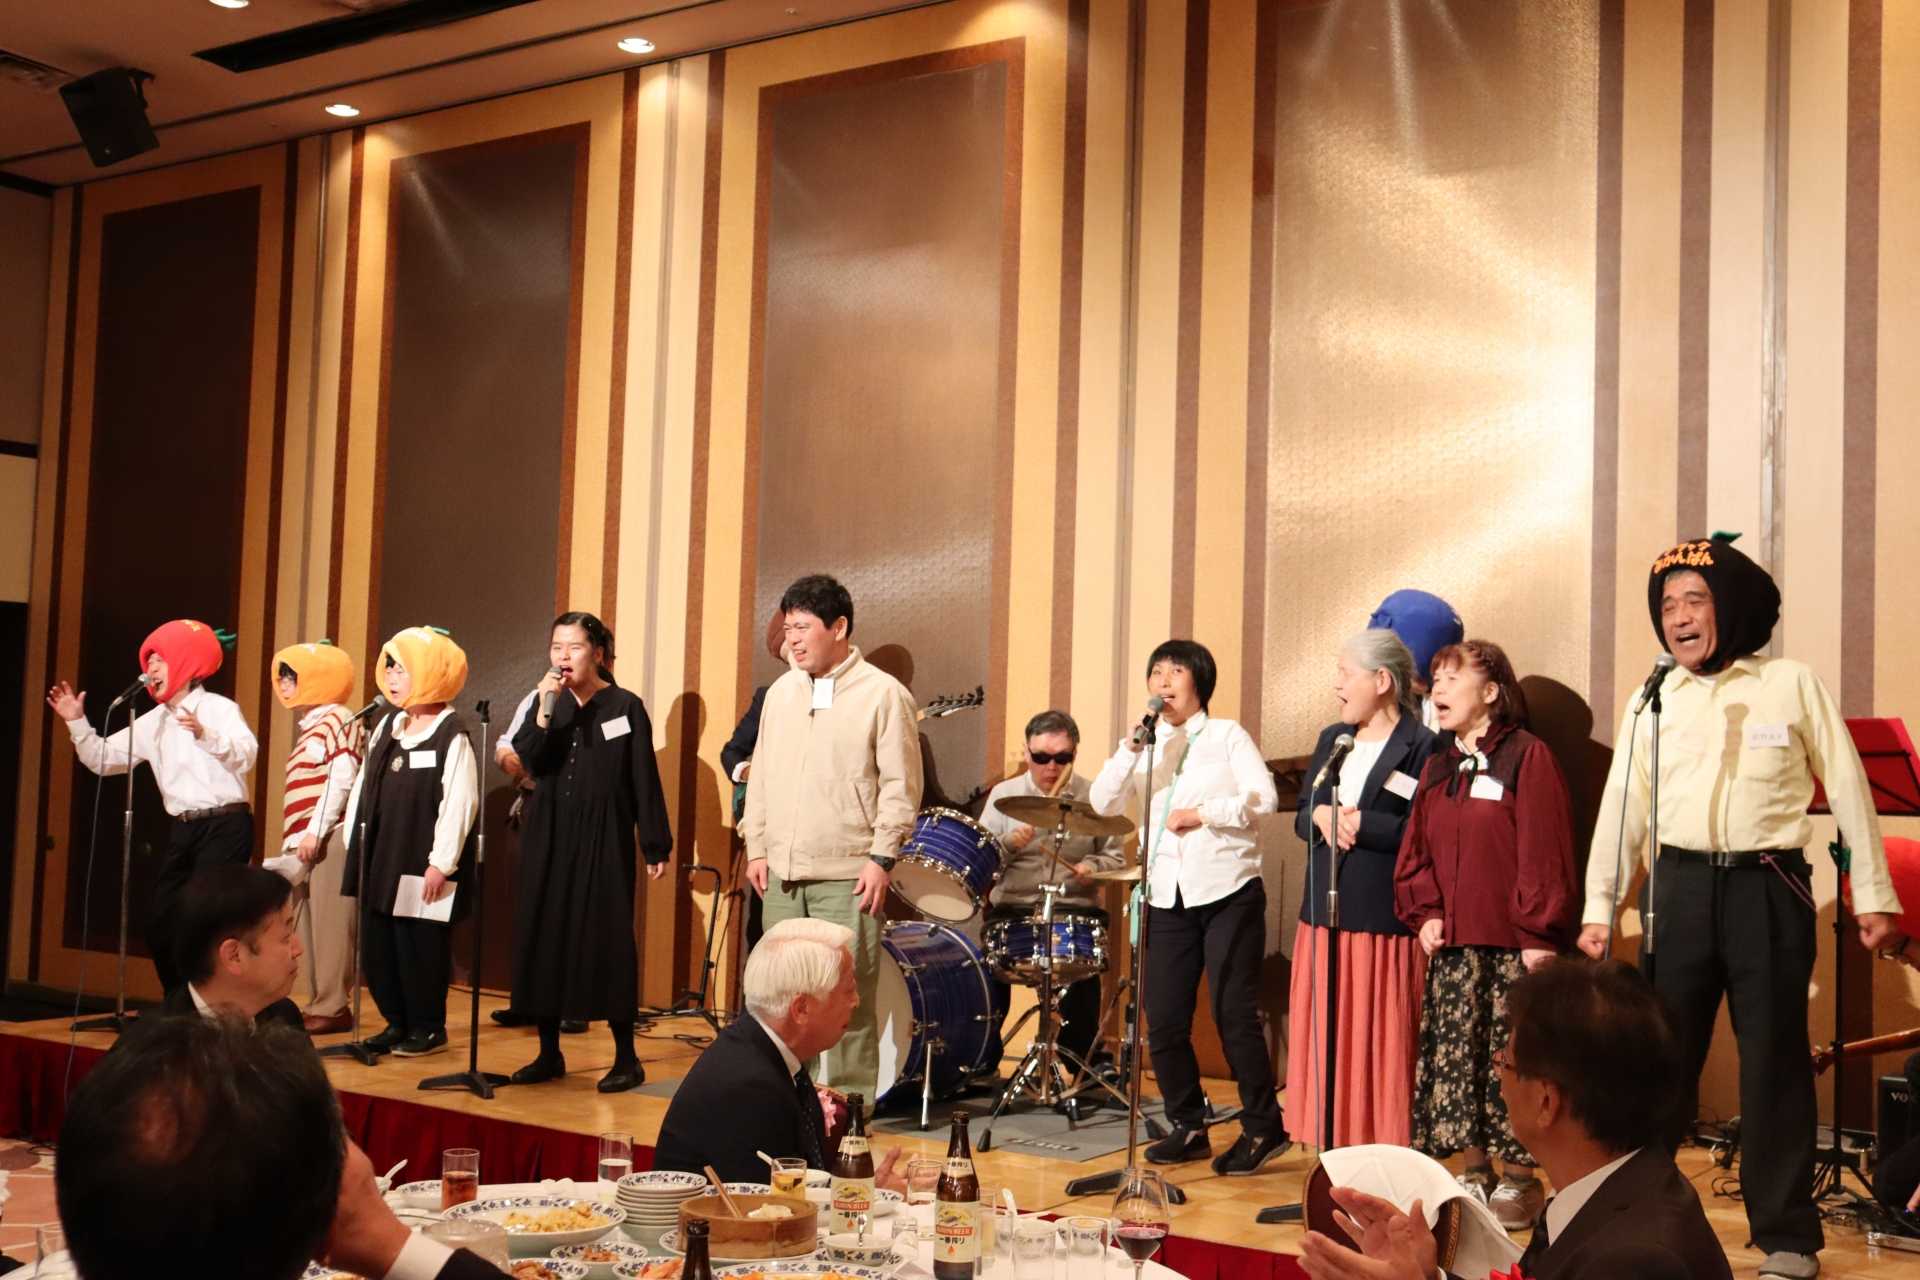 神奈川県知的障害施設団体連合会創立60周年記念式典・祝賀会に出演!